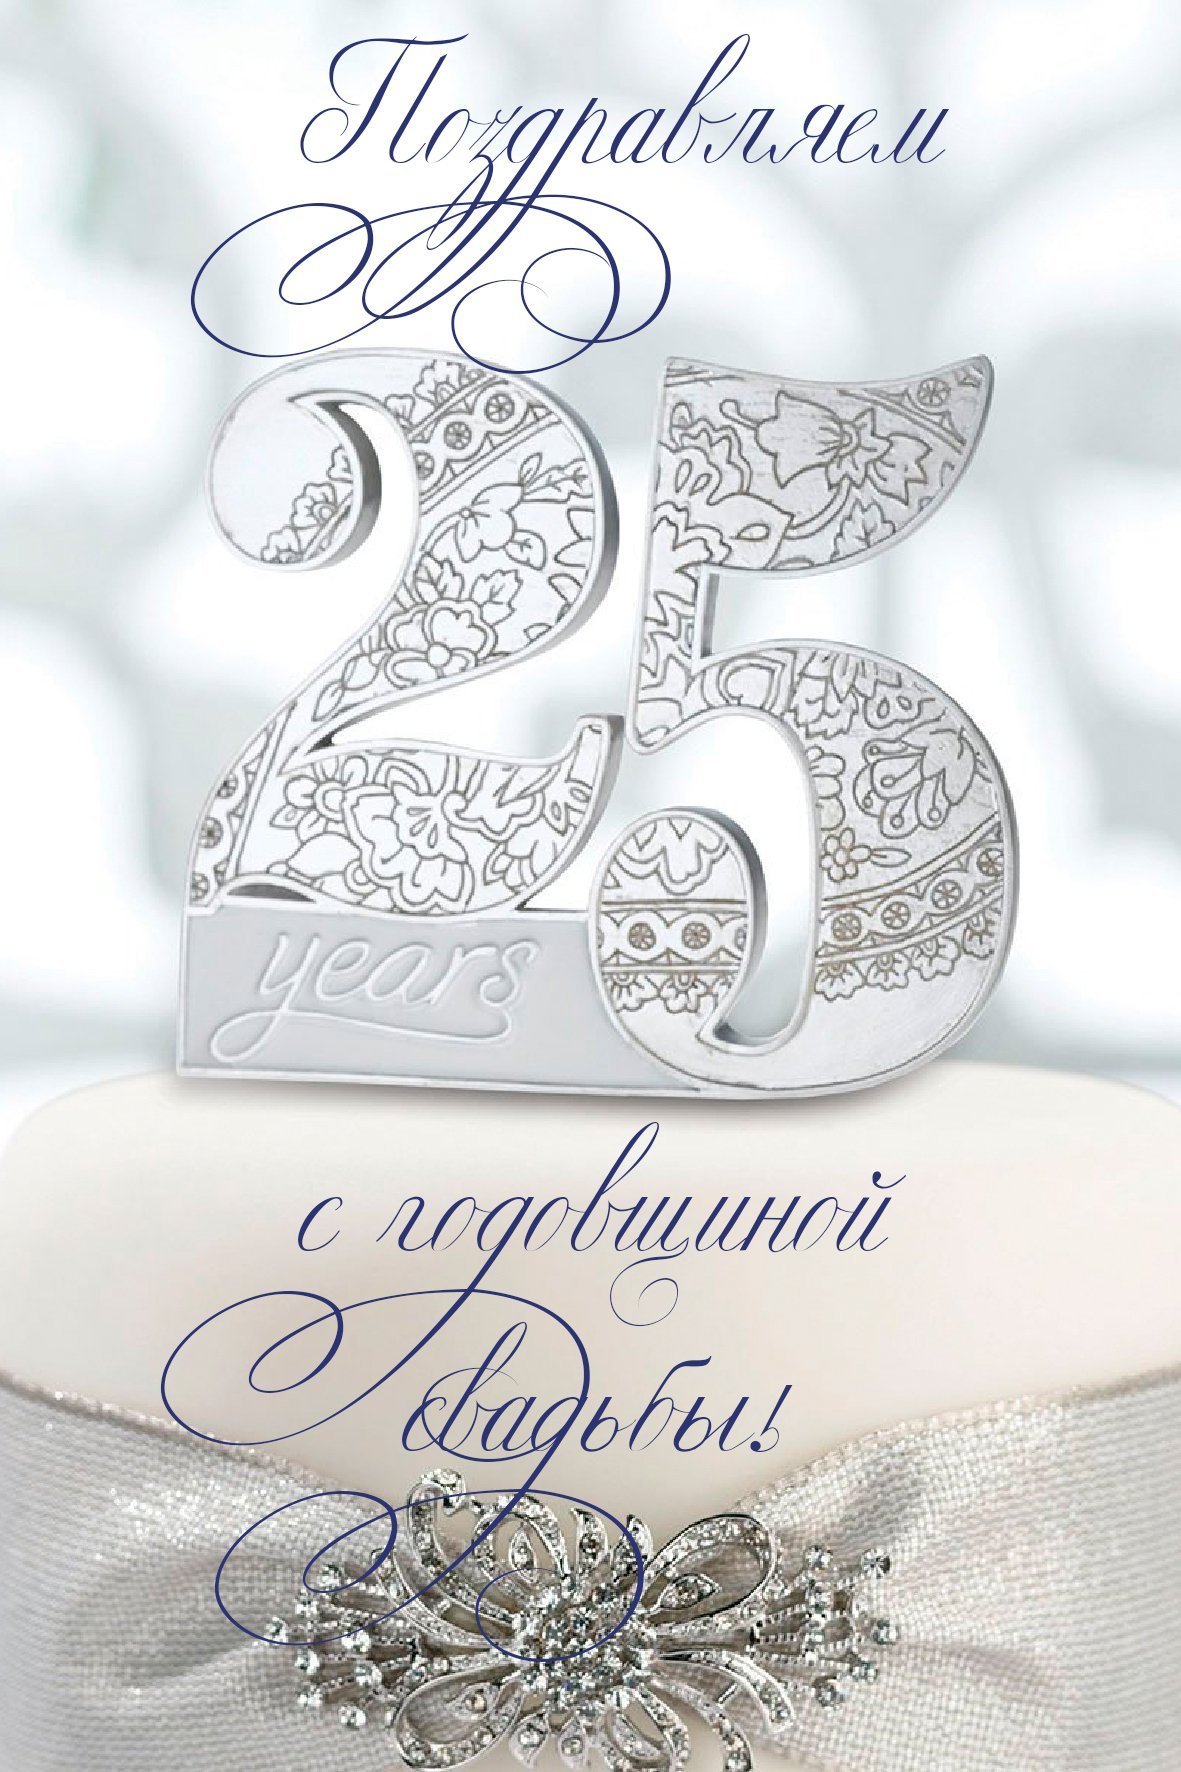 Серебряная свадьба: поздравление с серебряной свадьбой, 25 лет со дня свадьбы